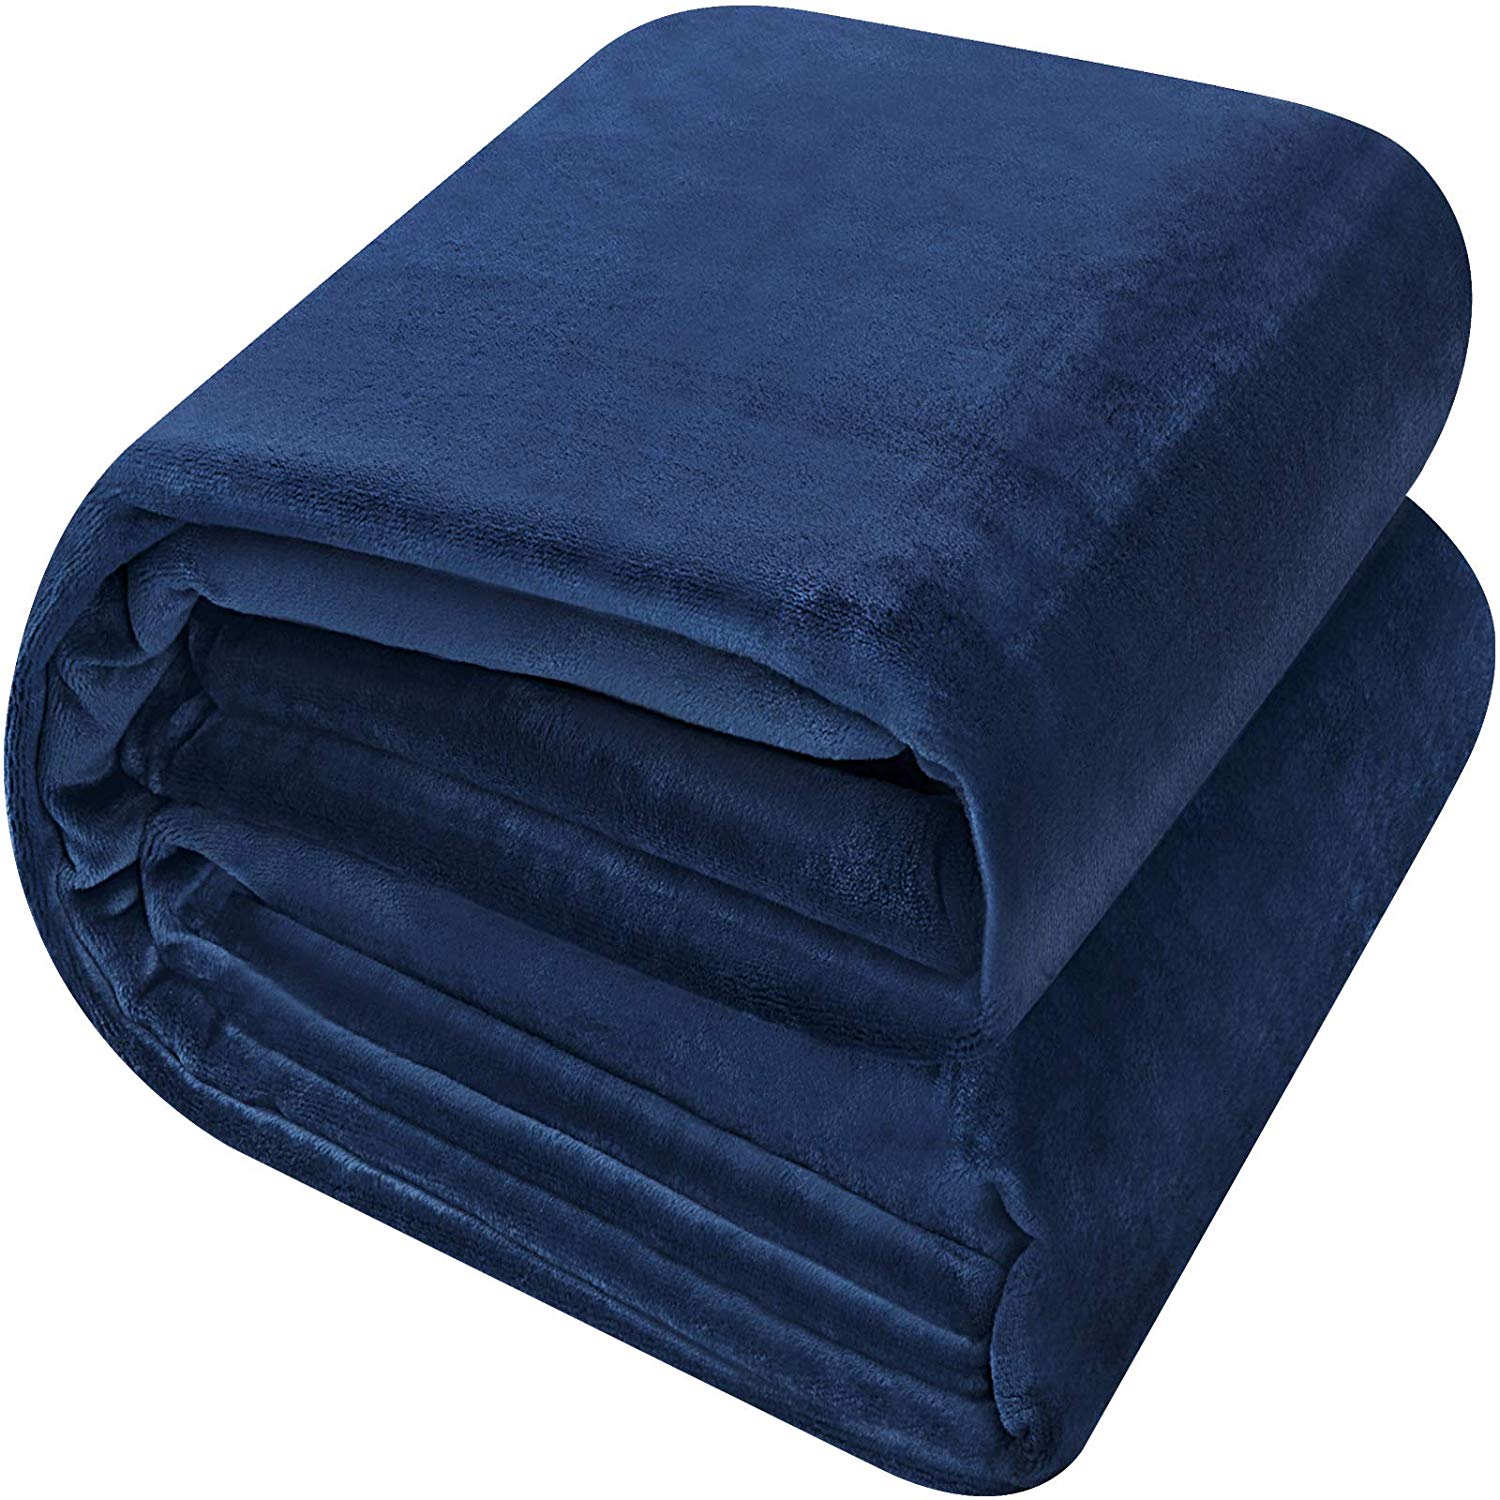 Flannel Fleece Blanket Buy Bulk Blankets Utopia Bedding Utopia Deals